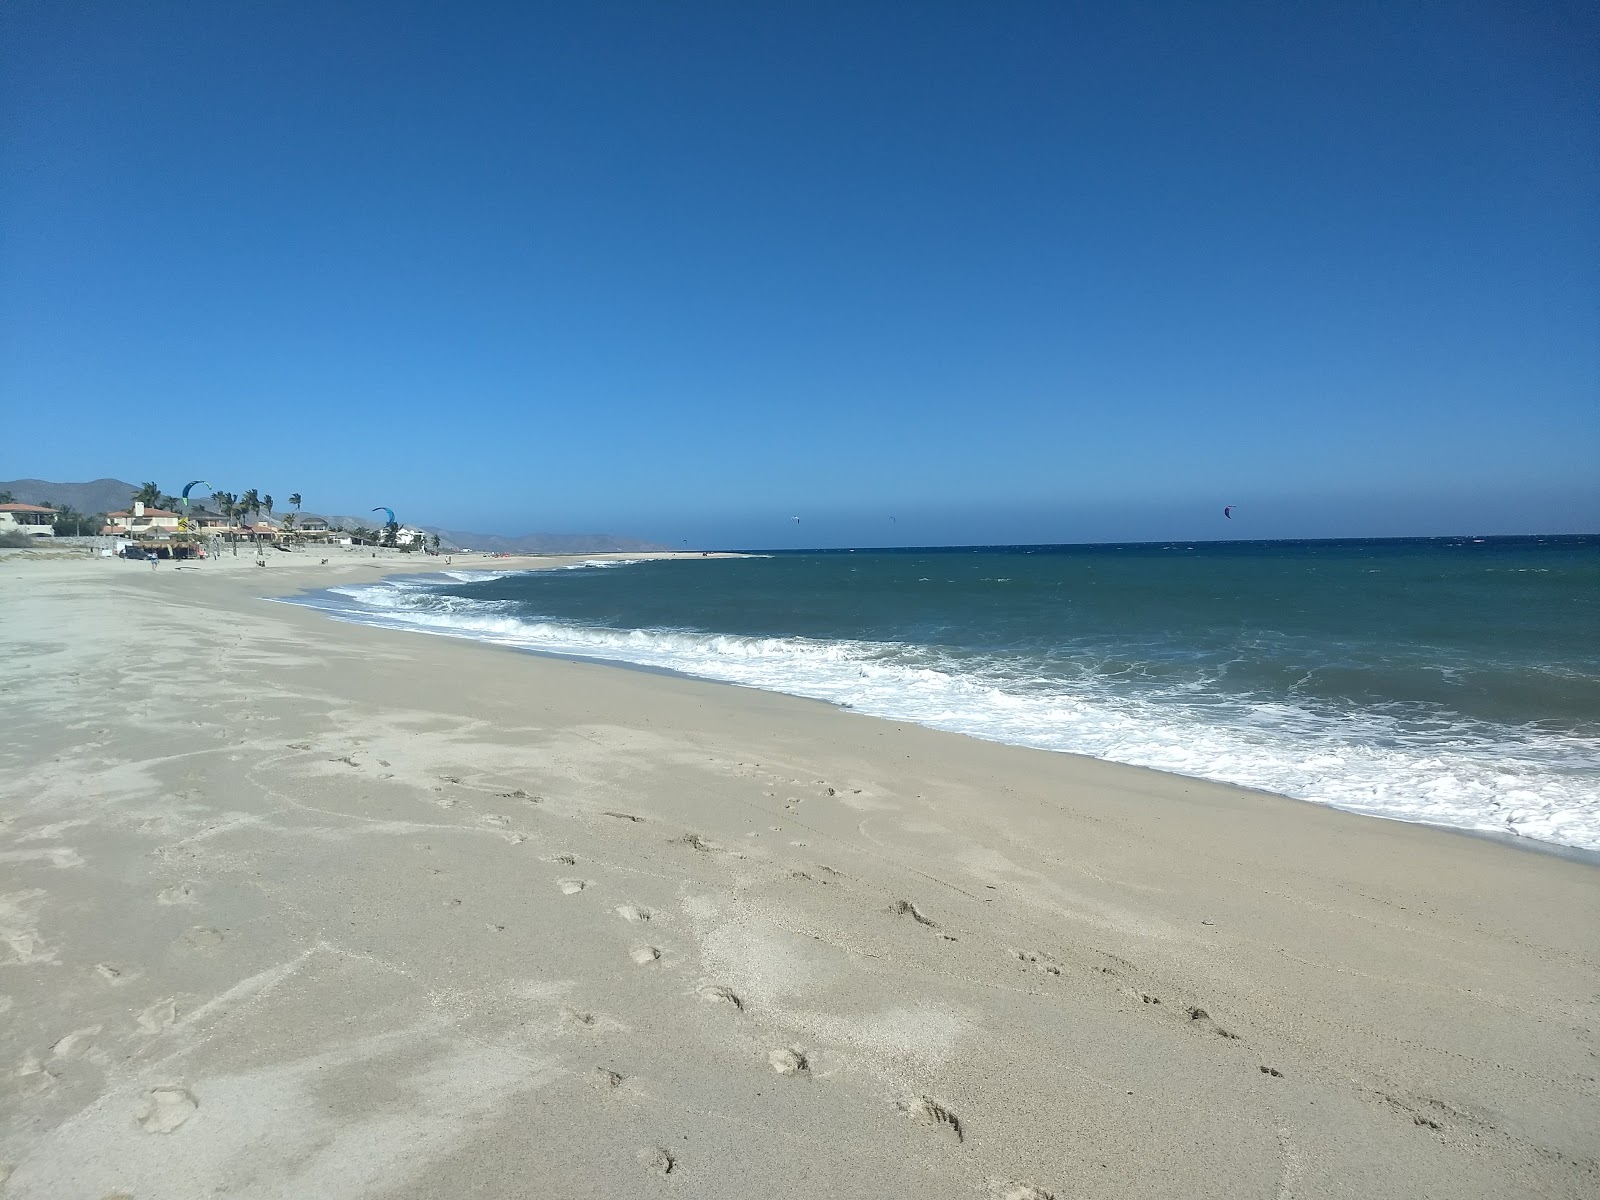 Foto af Playa Los Barriles - populært sted blandt afslapningskendere